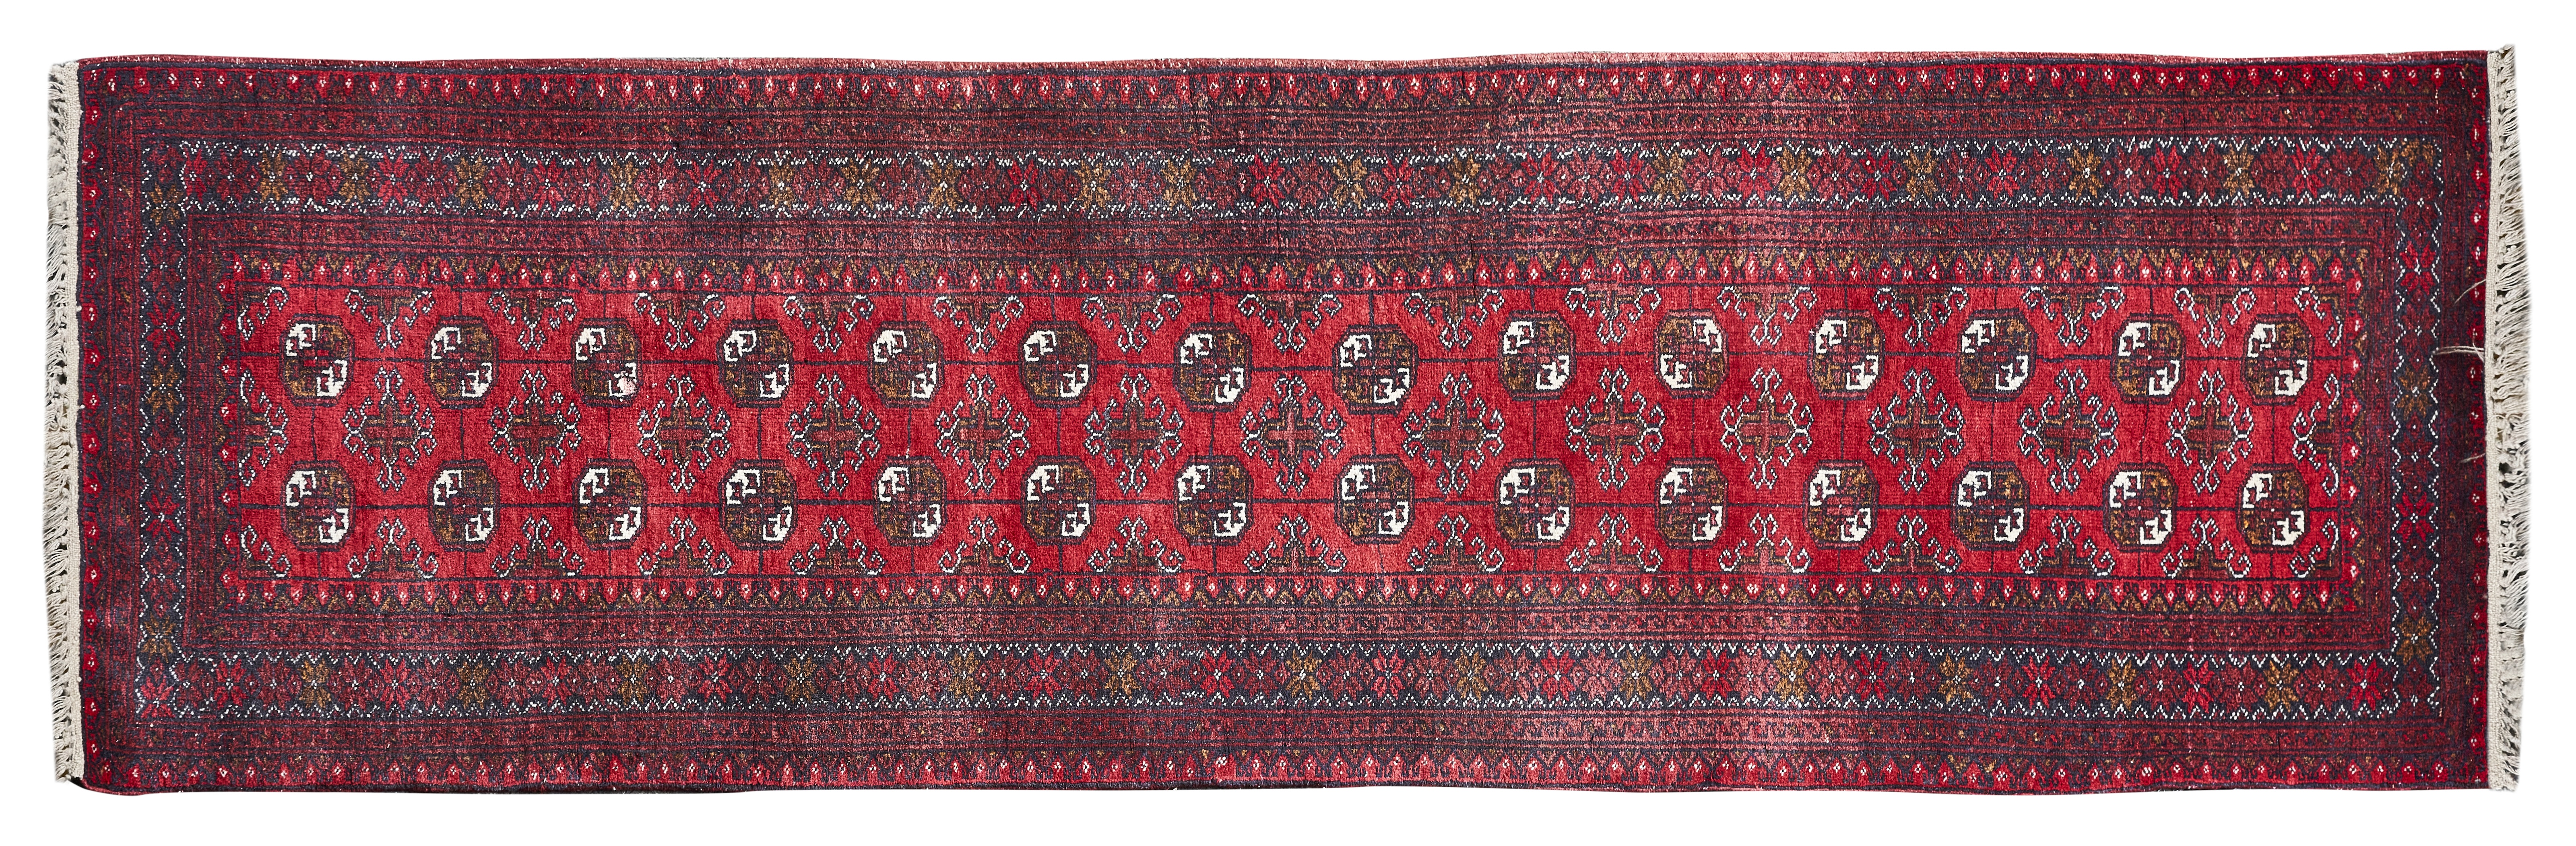 Afghan runner rug